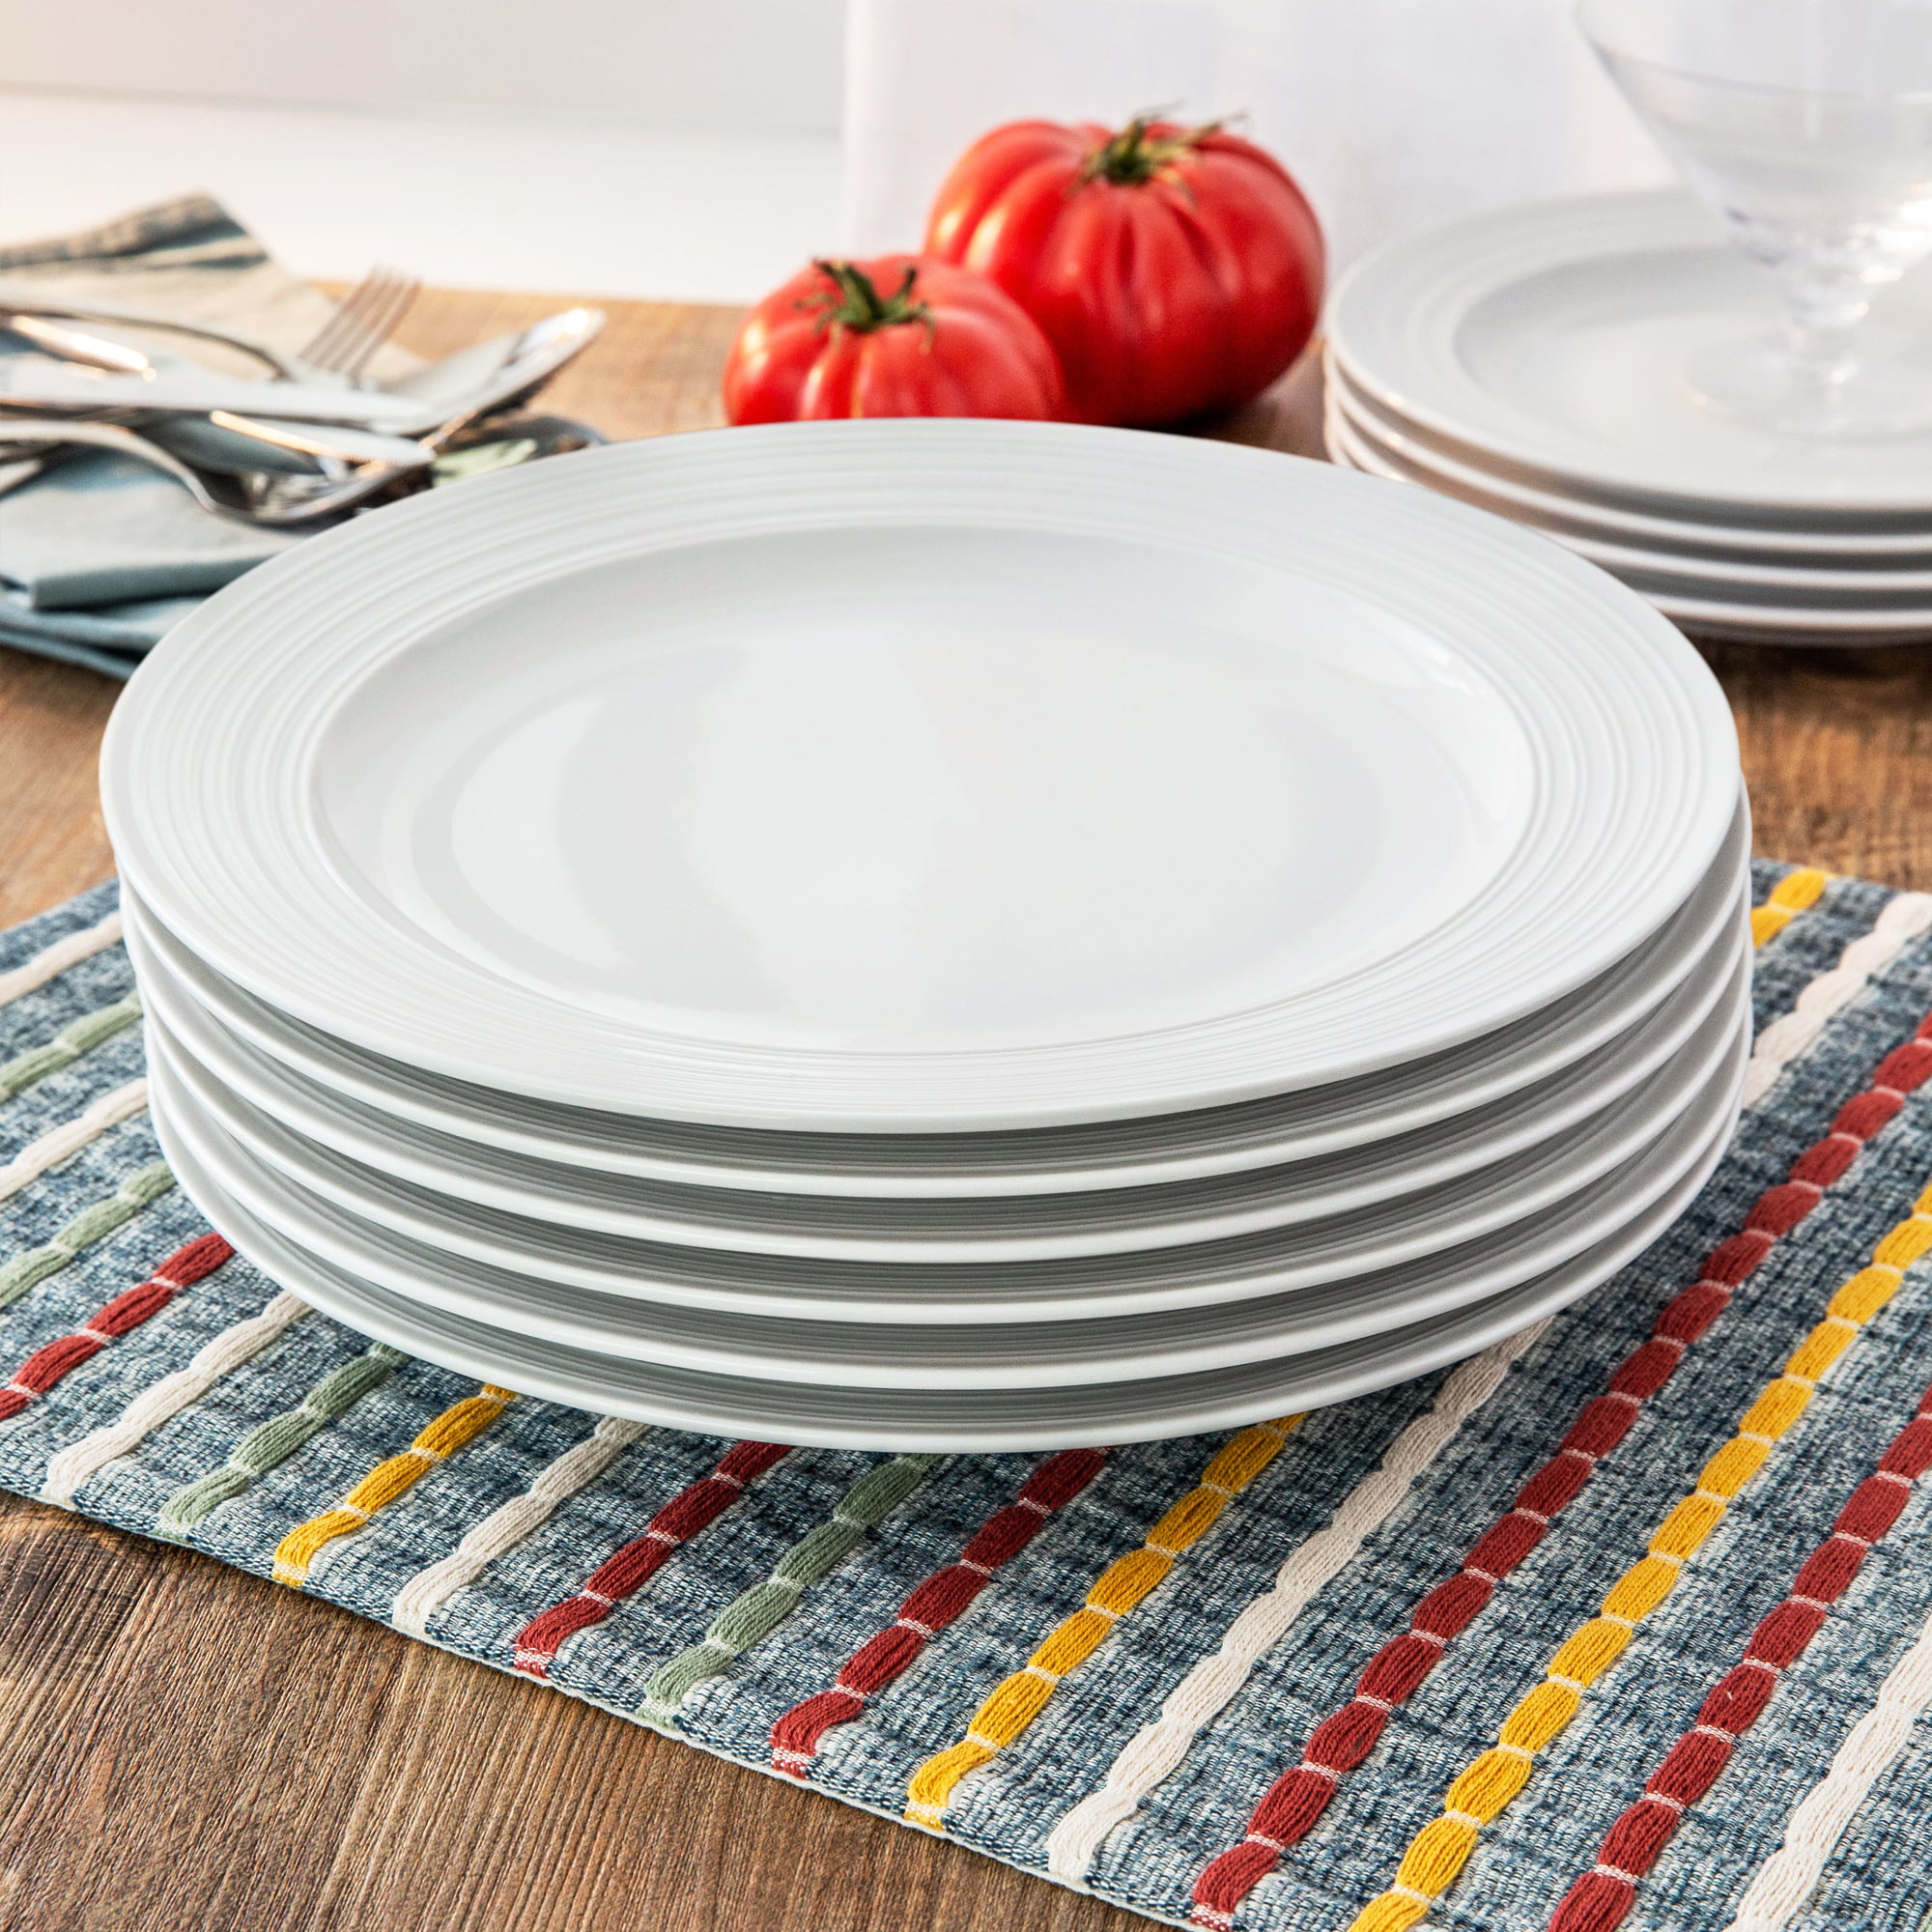 Better Homes & Gardens Porcelain Anniston Textured Edge Dinner Plates